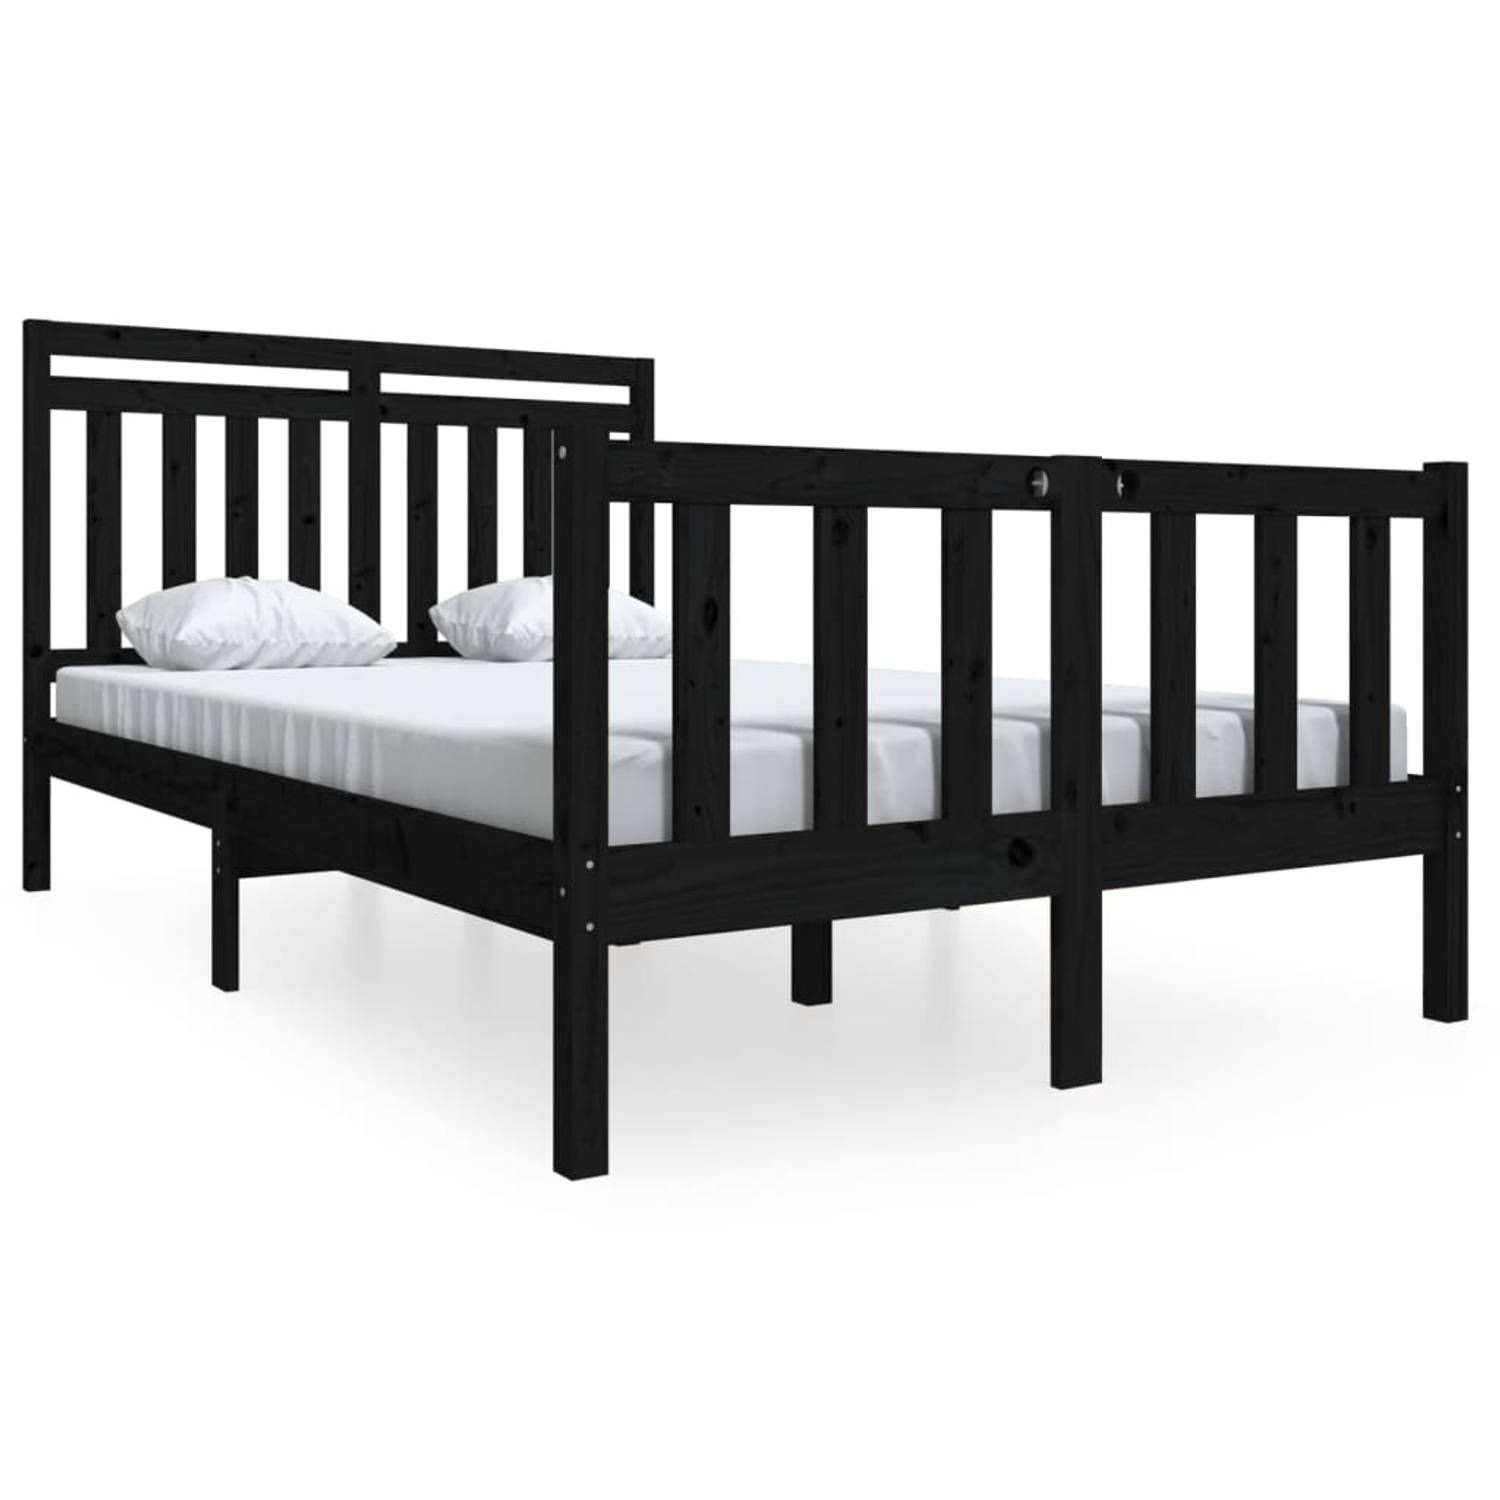 The Living Store Bedframe massief hout zwart 140x190 cm - Bedframe - Bedframes - Tweepersoonsbed - Bed - Bedombouw - Dubbel Bed - Frame - Bed Frame - Ledikant - Bedframe Met Hoofde